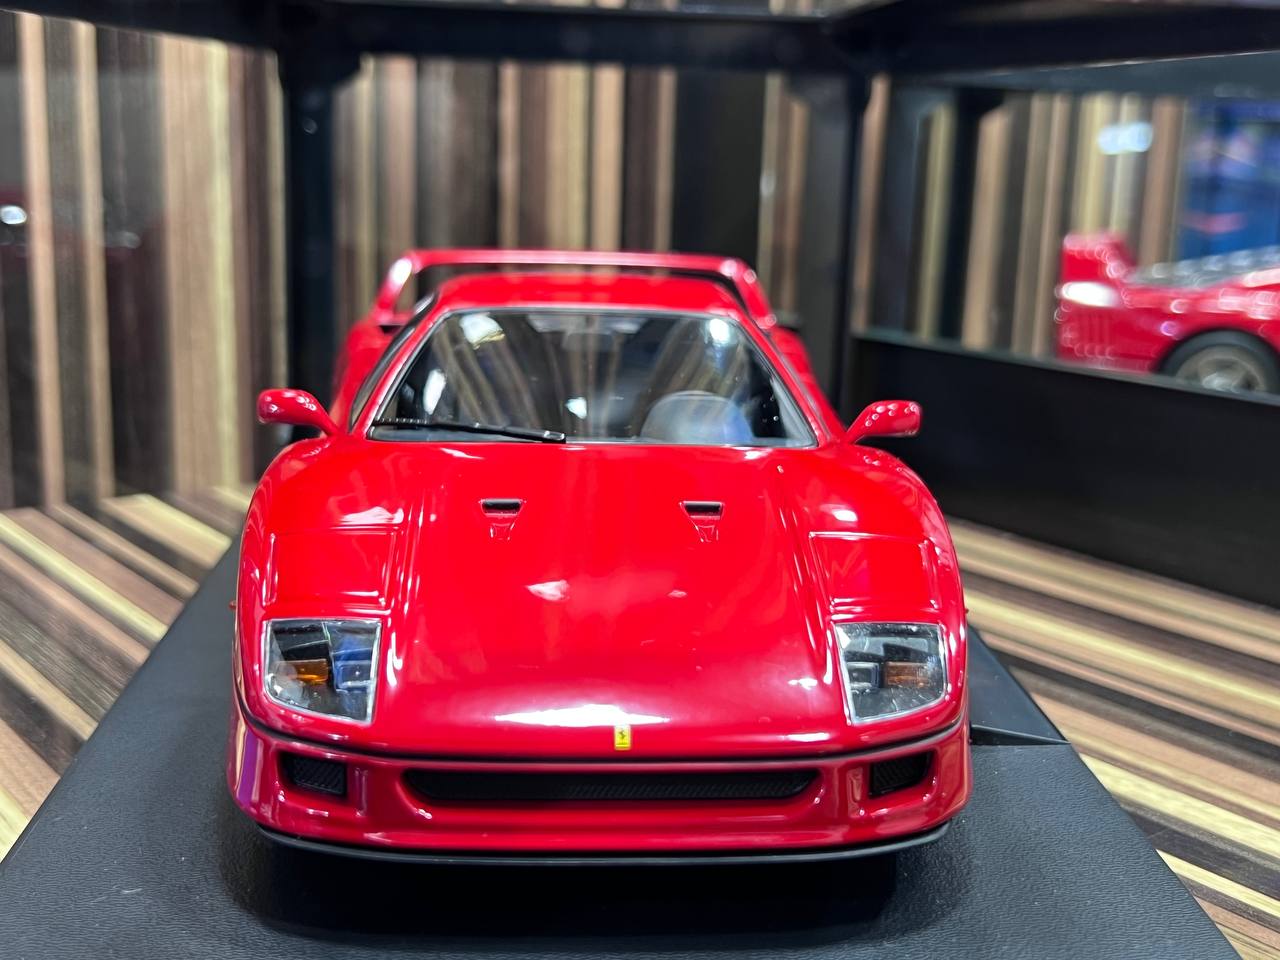 1/18 Ferrari F40 Red by KK Models